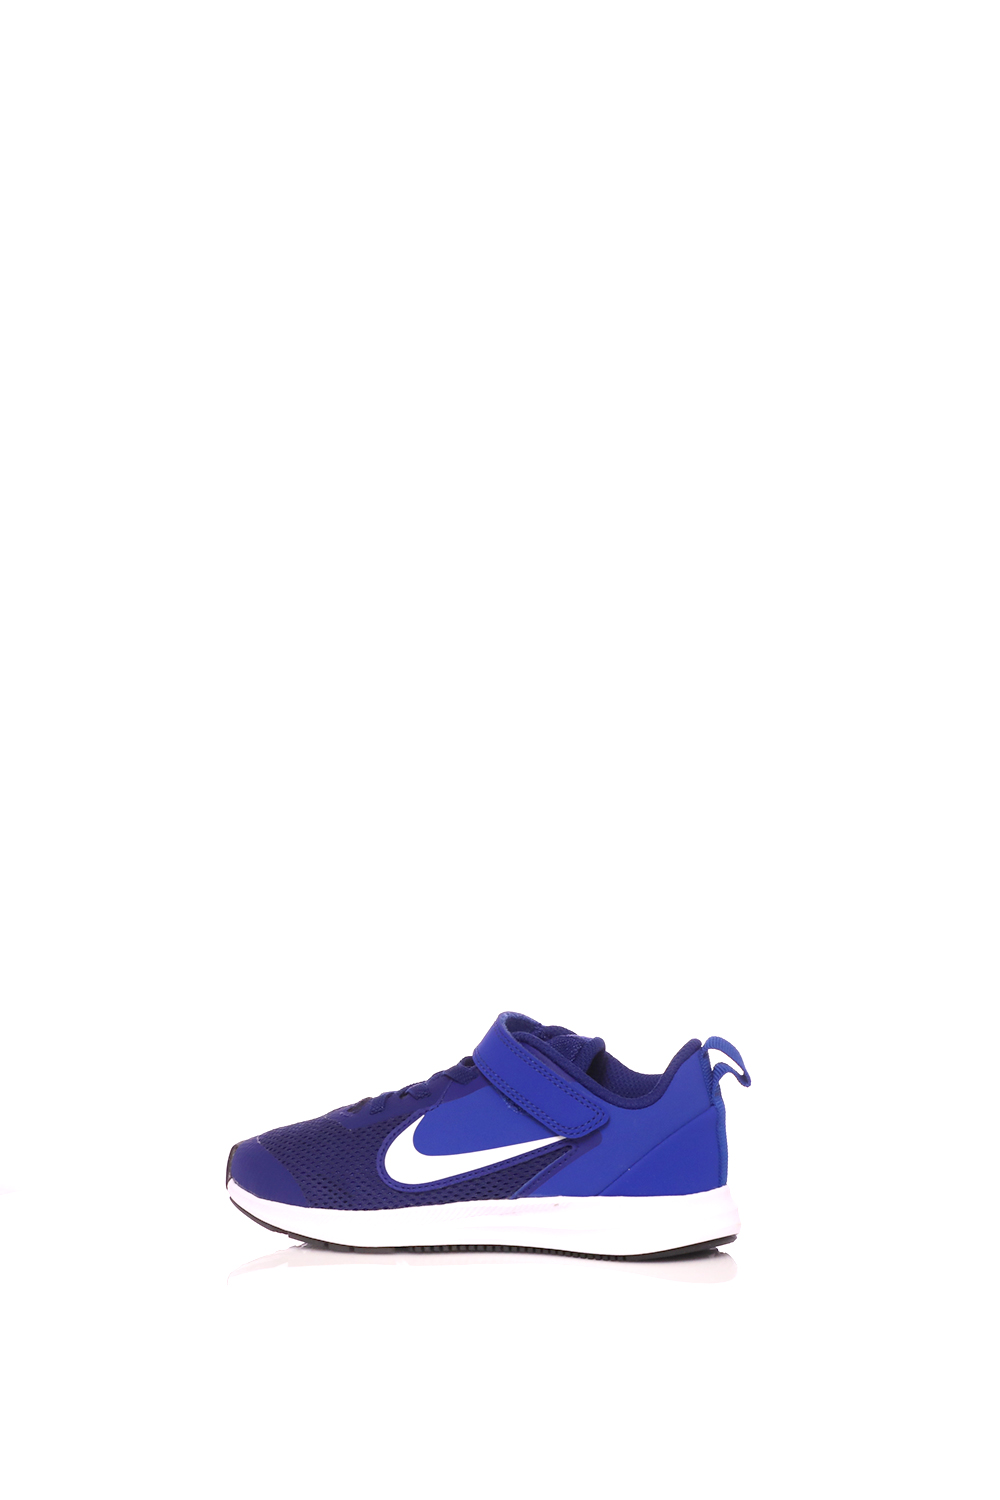 NIKE – Παιδικα παπουτσια running NIKE Downshifter 9 (PSV) μπλε-λευκα